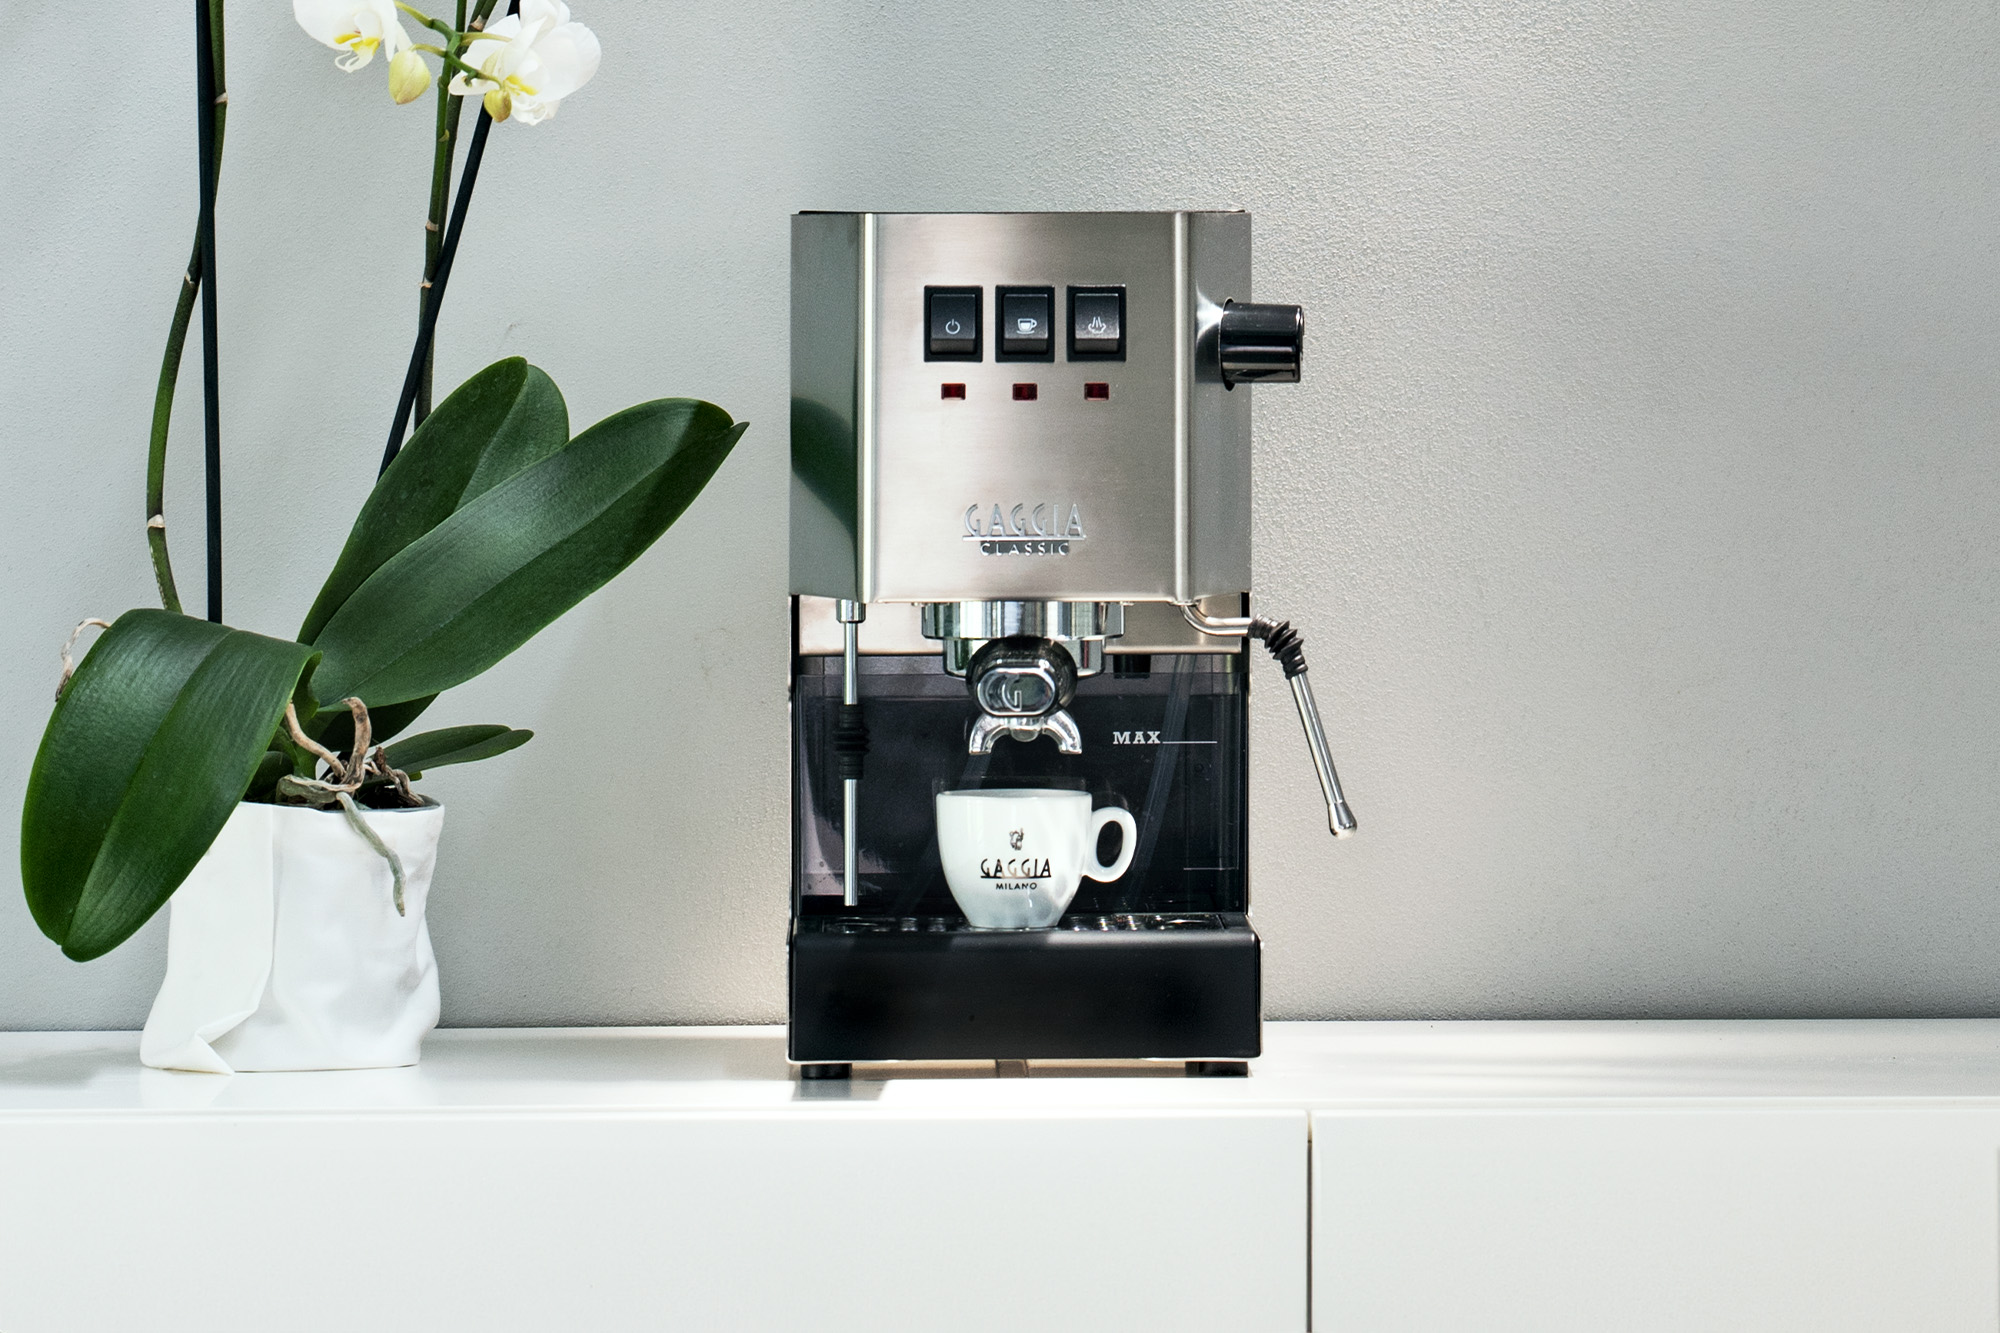 Gaggia Classic Pro Gaggia Classic Pro Traditional Espresso Coffee Machine  Grey